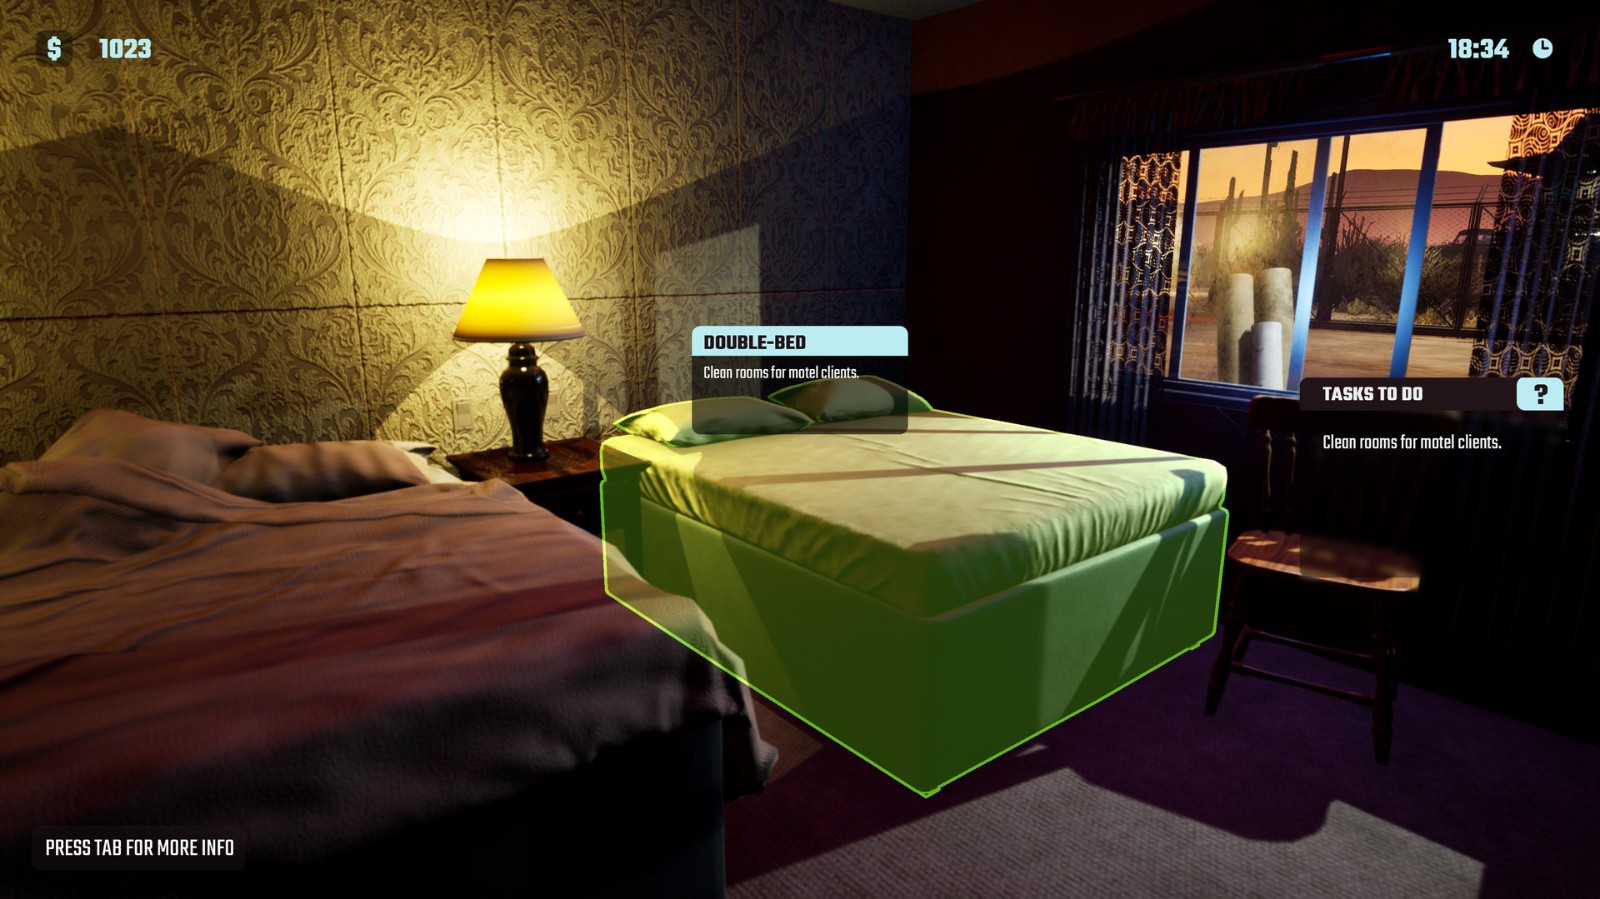 趣味模拟游戏《汽车旅馆模拟器》正式上架Steam 你必须在有限的旅馆空间内作出选择